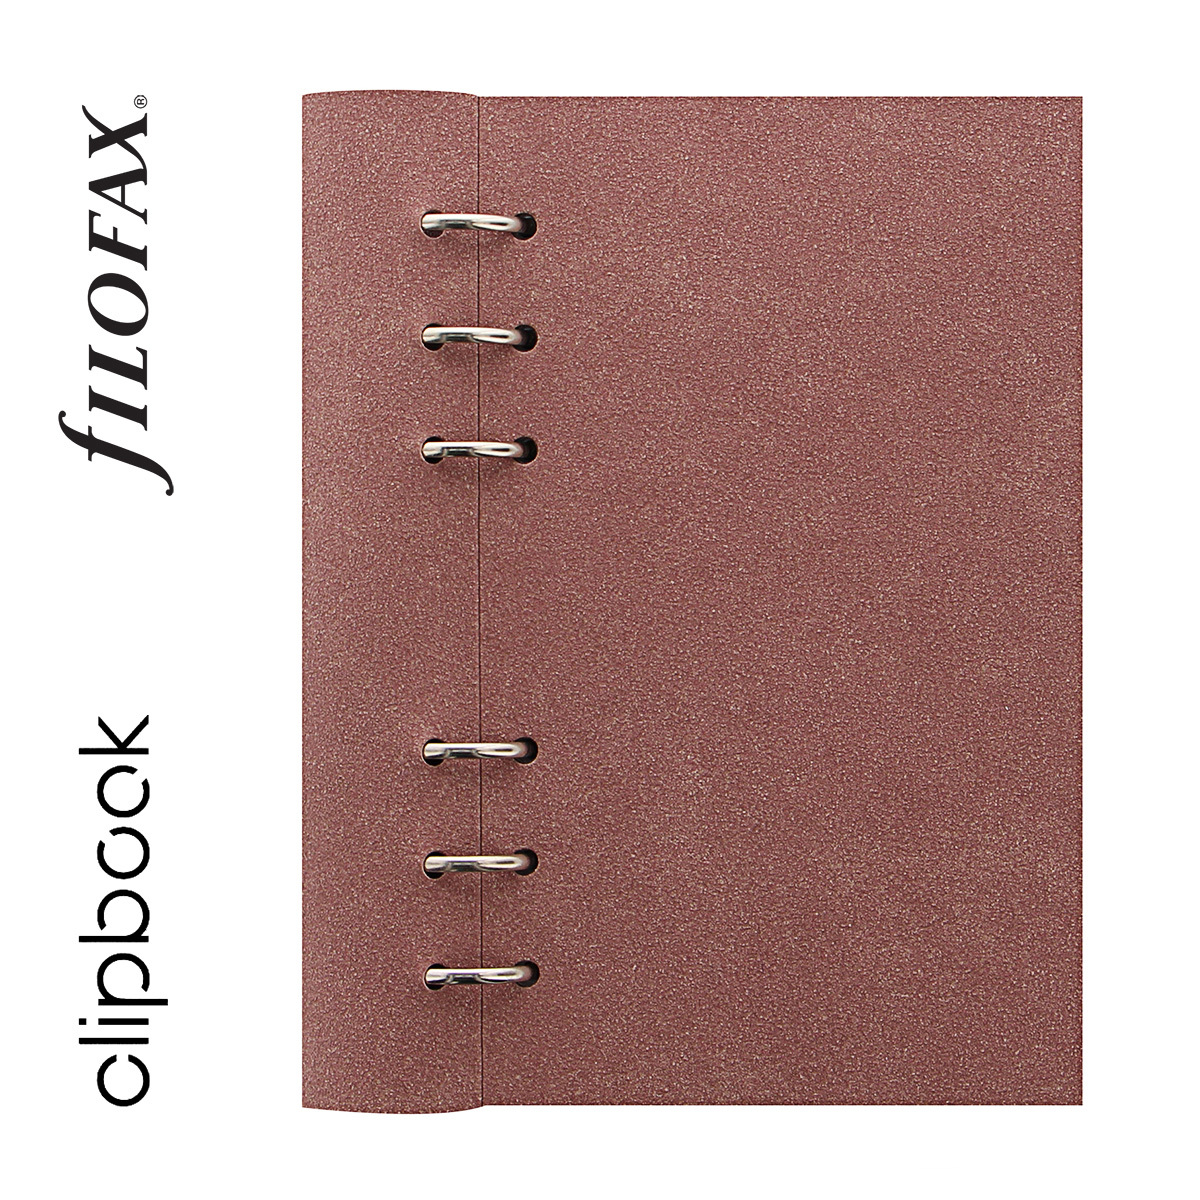 Filofax Clipbook Architexture Personal Terracotta